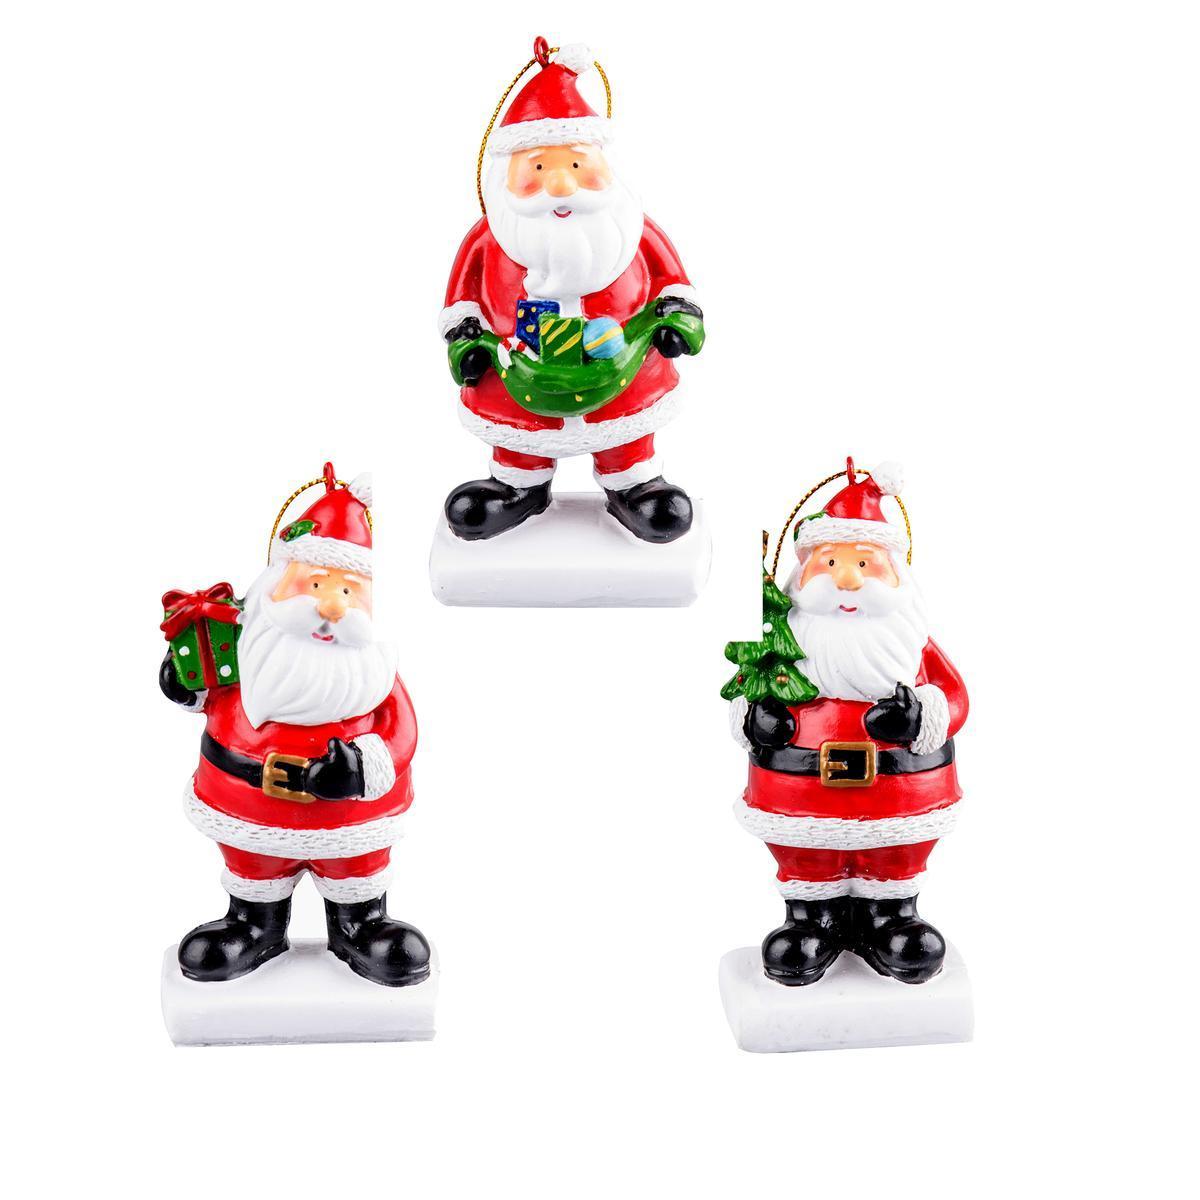 Suspension Père Noël - Polyrésine - 5 x 3,8 x H 10,8 cm - Différents modèles au choix